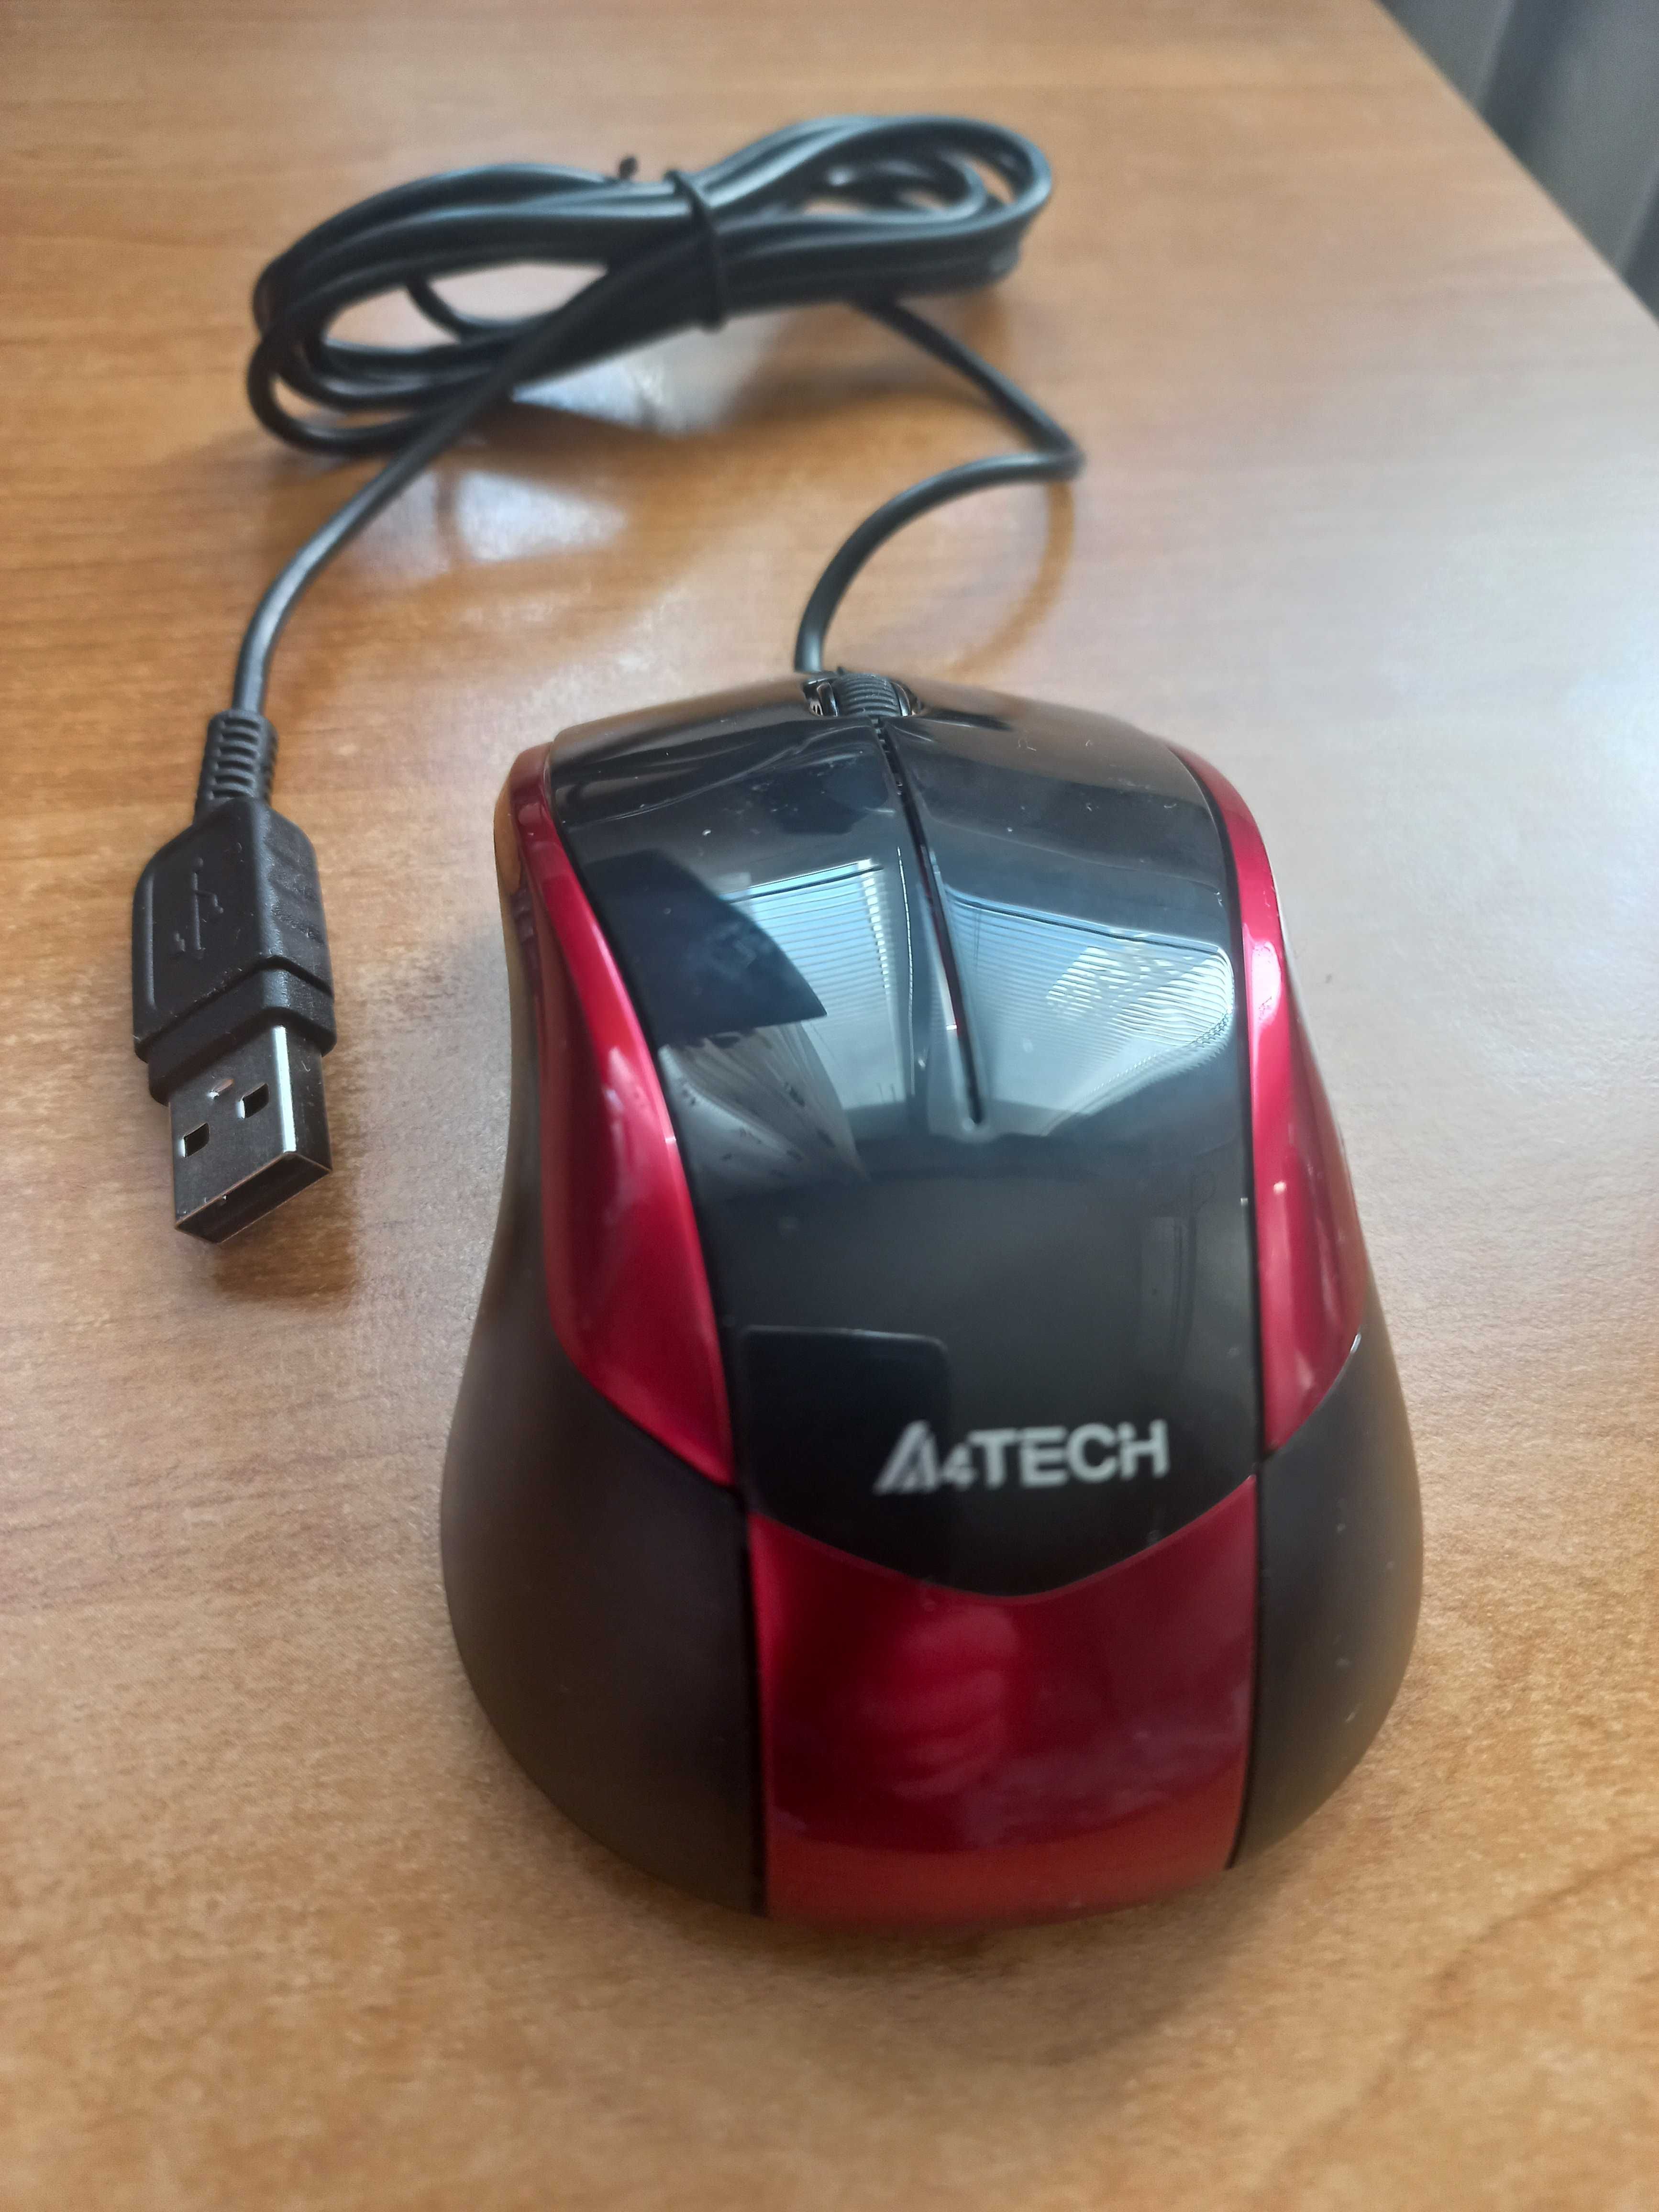 Mouse optic / Mouse-uri optice Microsoft A4Tech , V-Trac